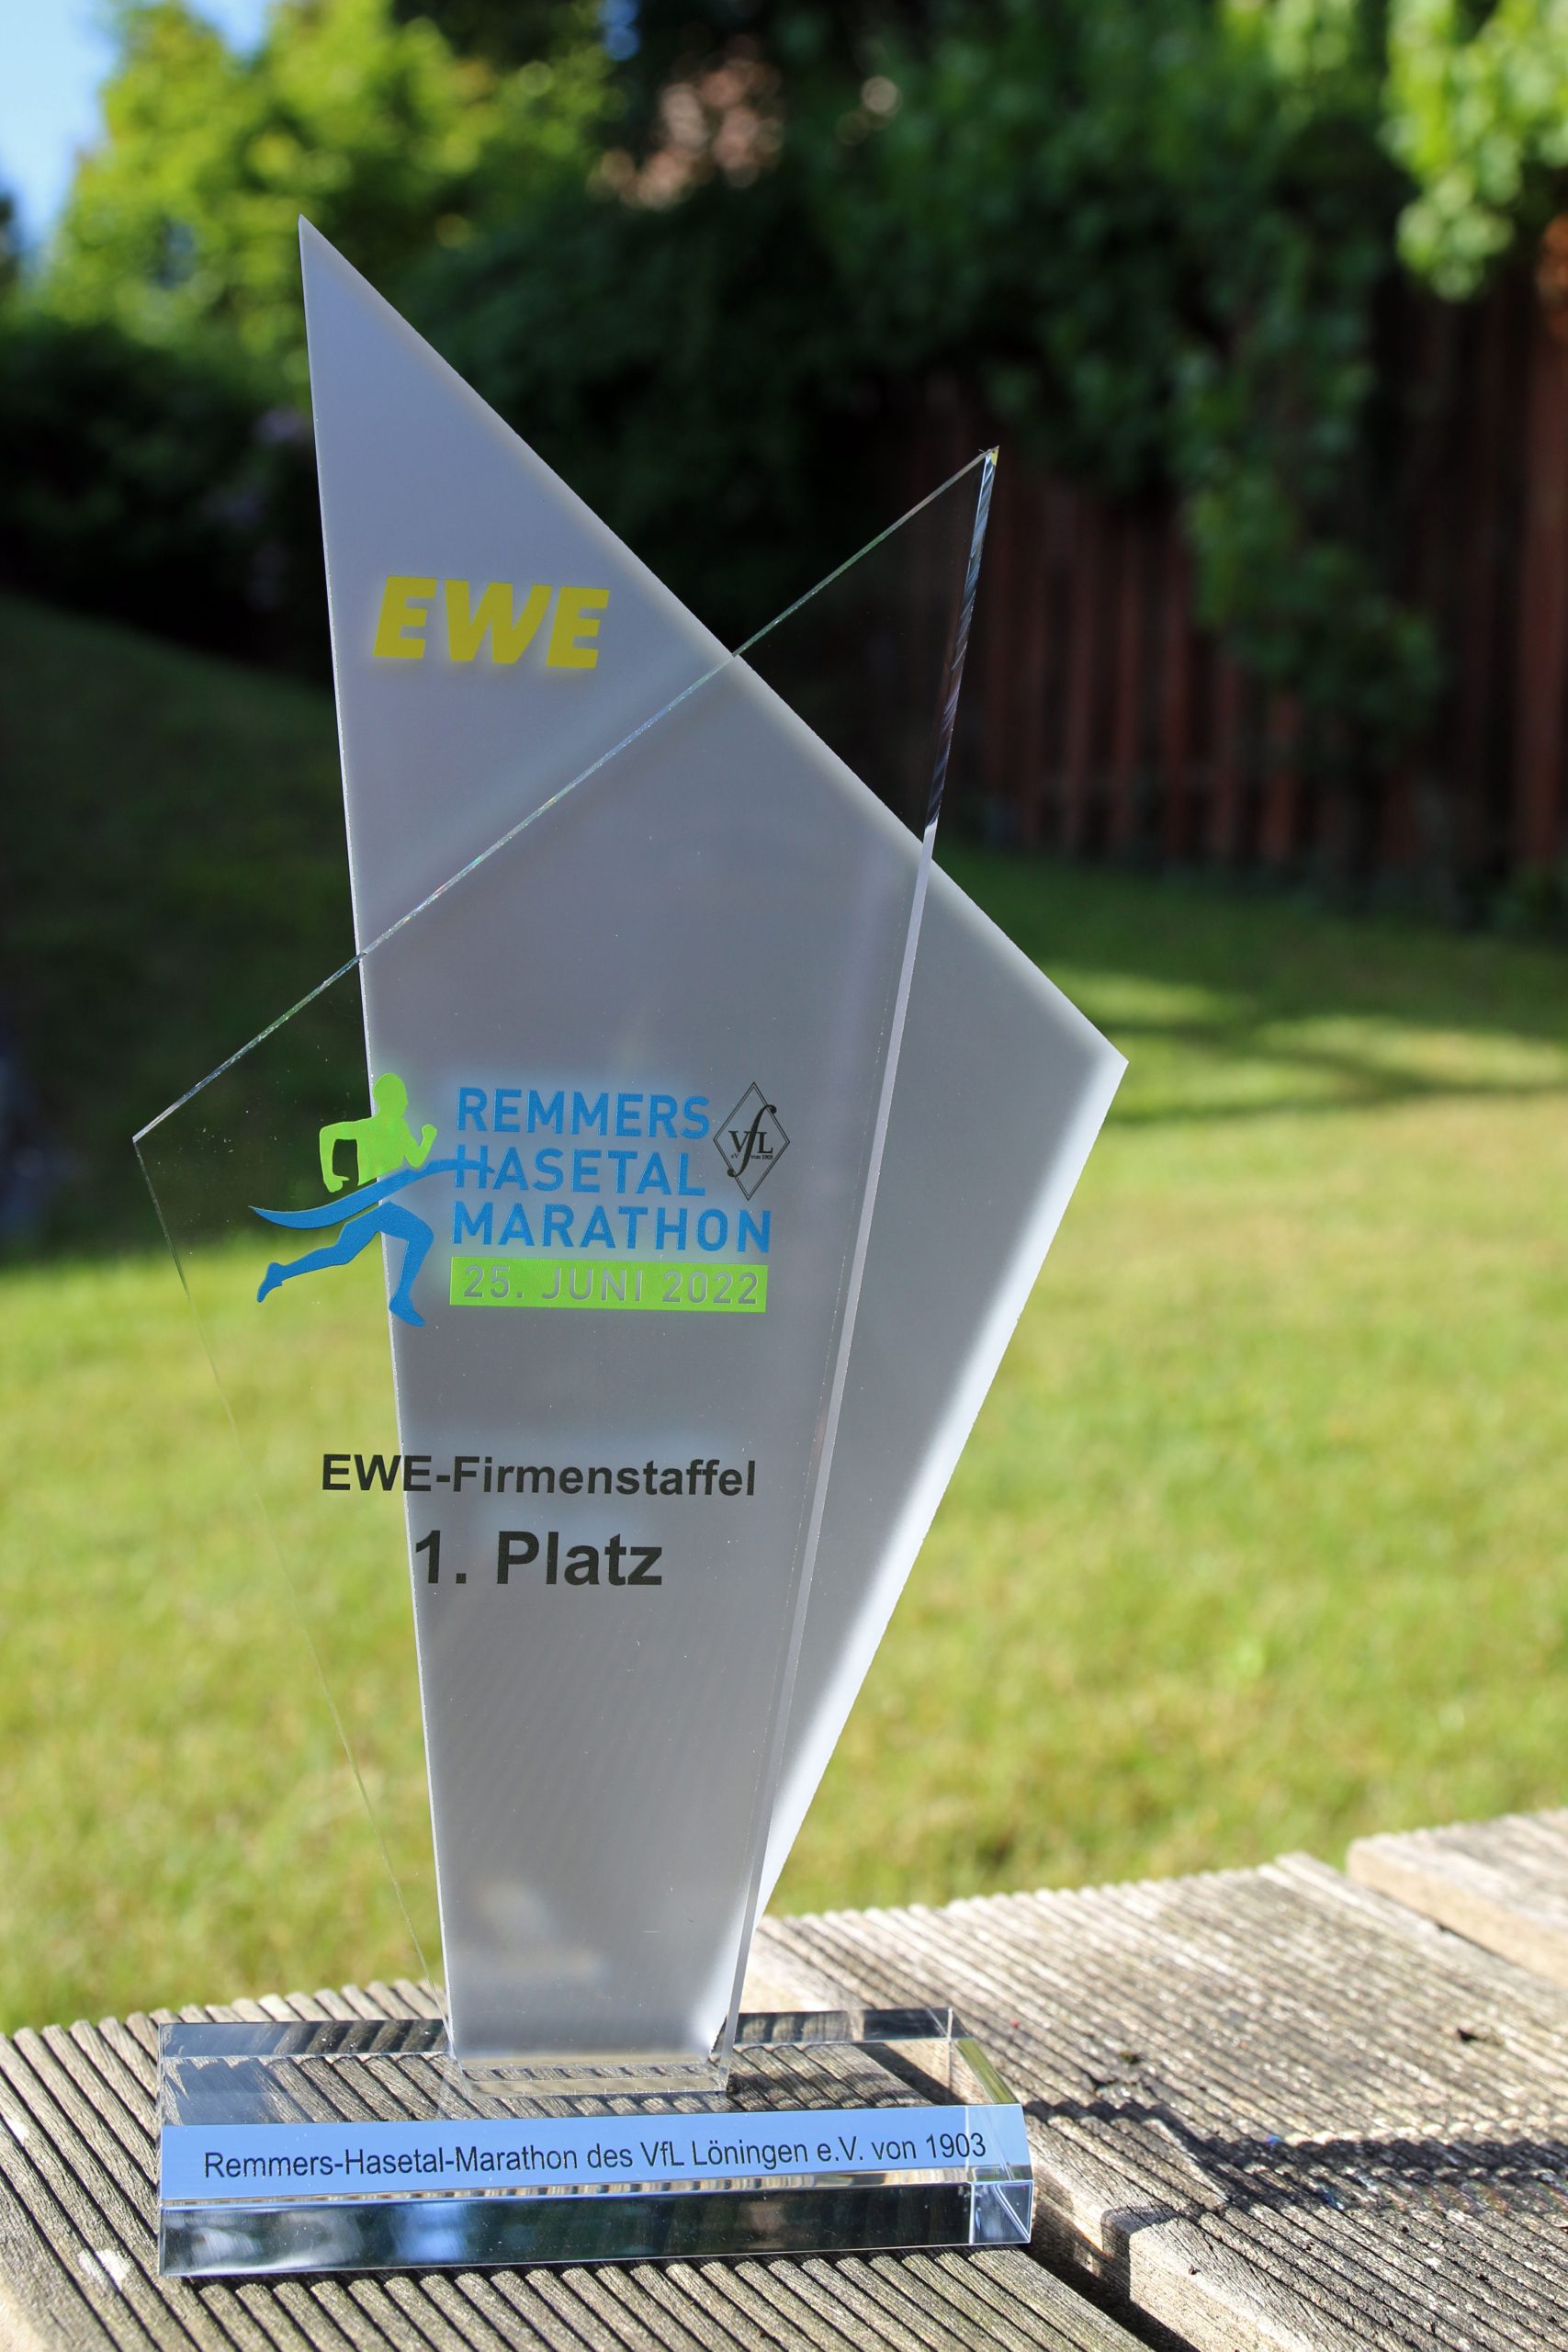 zum Bild:Der Siegerpokal 2022 beim EWE-Firmenstaffel-Wettbewerb beim Remmers-Hasetal-Marathon des VfL Löningen. Foto: Stefan Beumker.